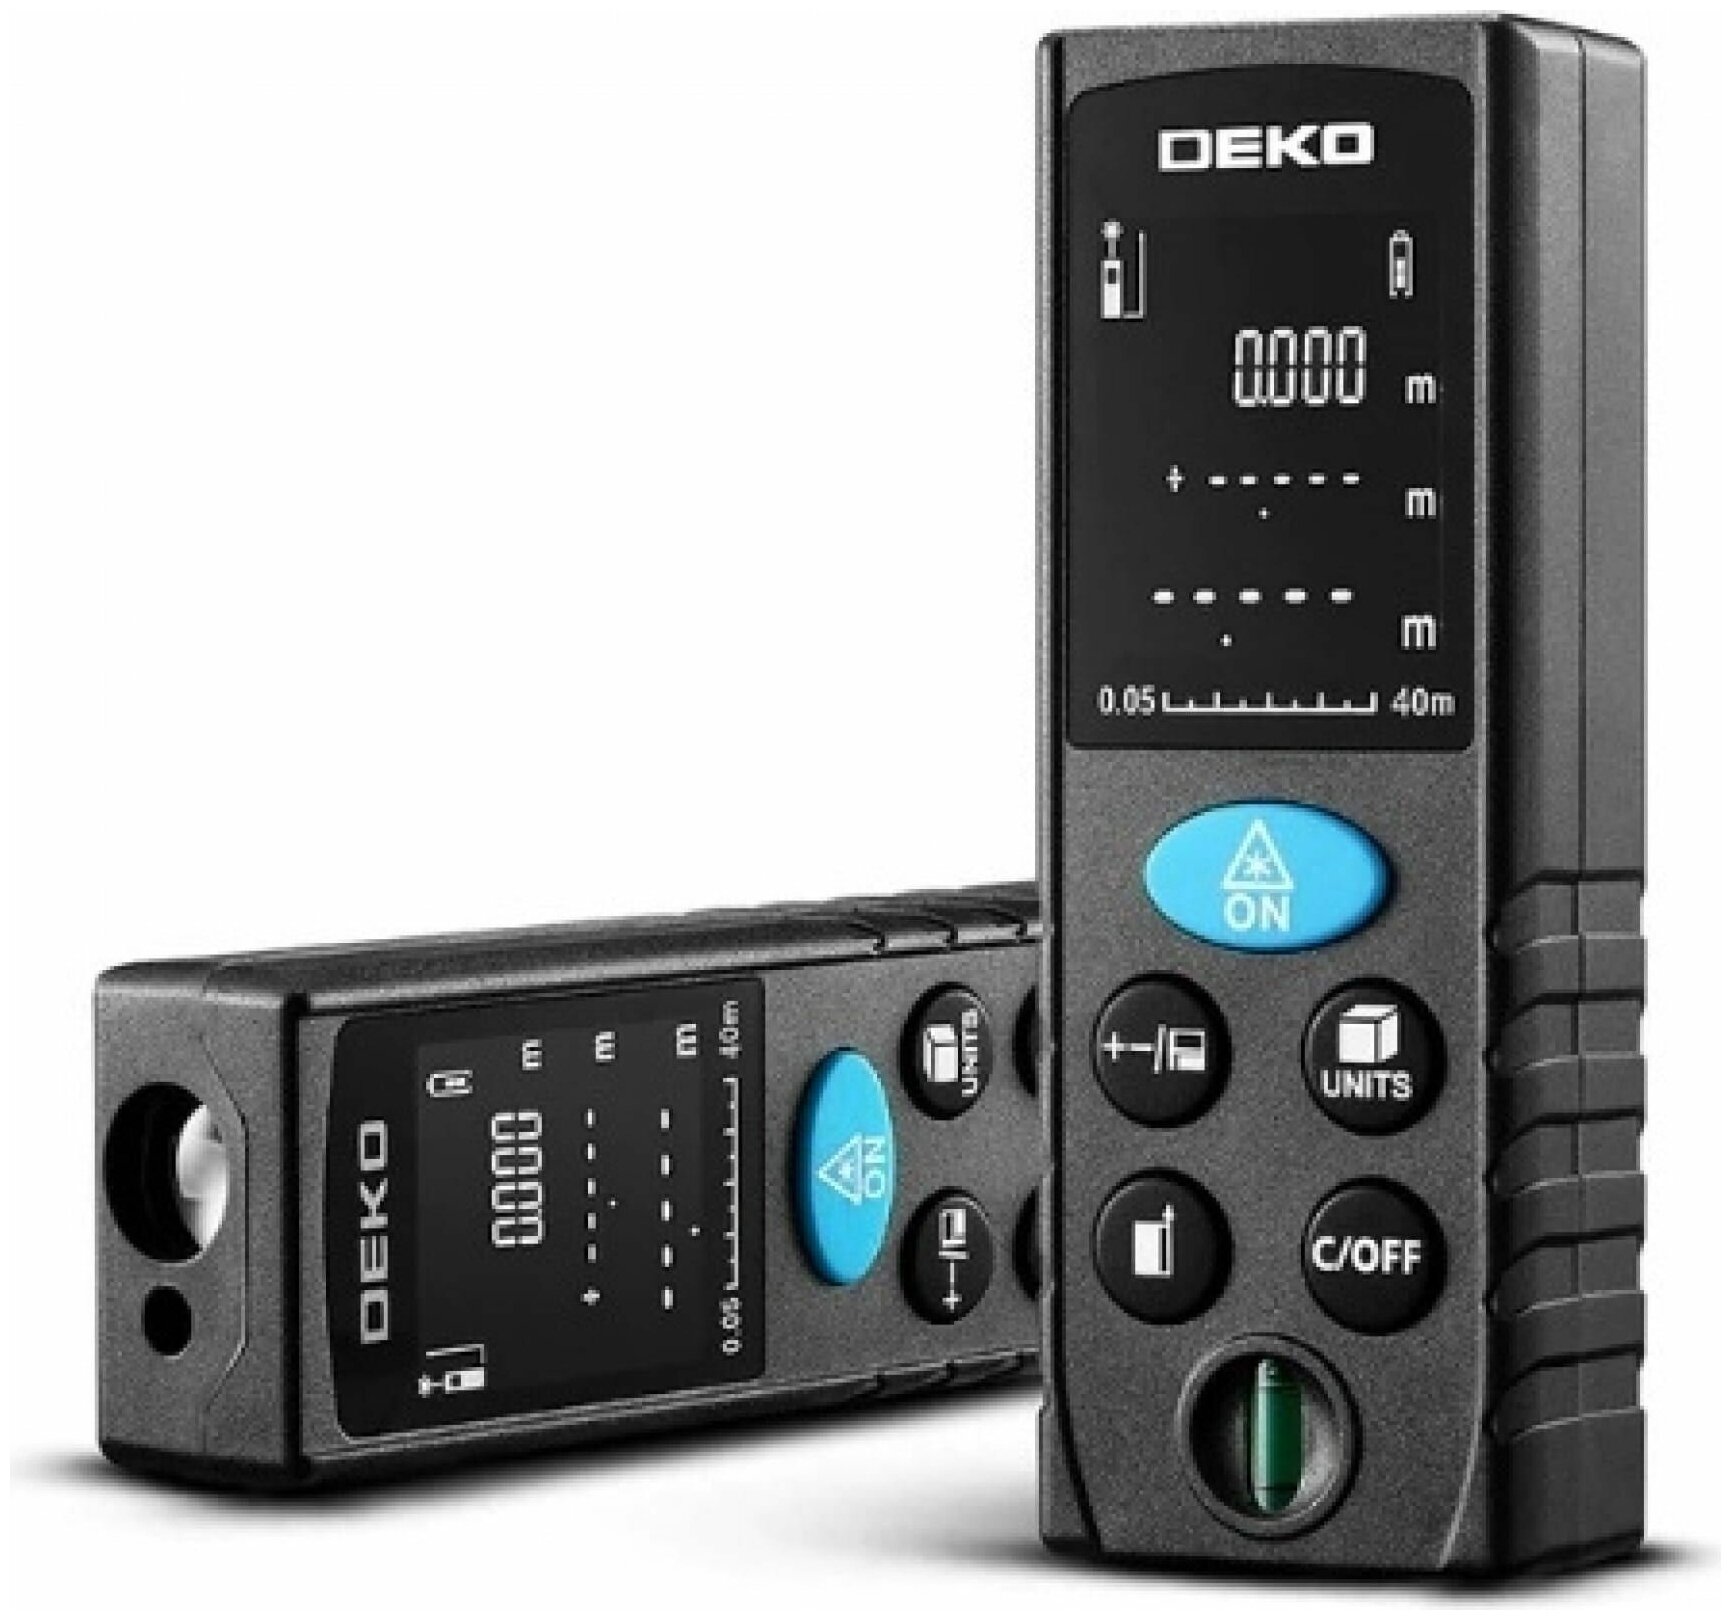 Лазерный дальномер DEKO LRD110-40 электроинструмент, подарок на день рождения мужчине, любимому, папе, дедушке, парню